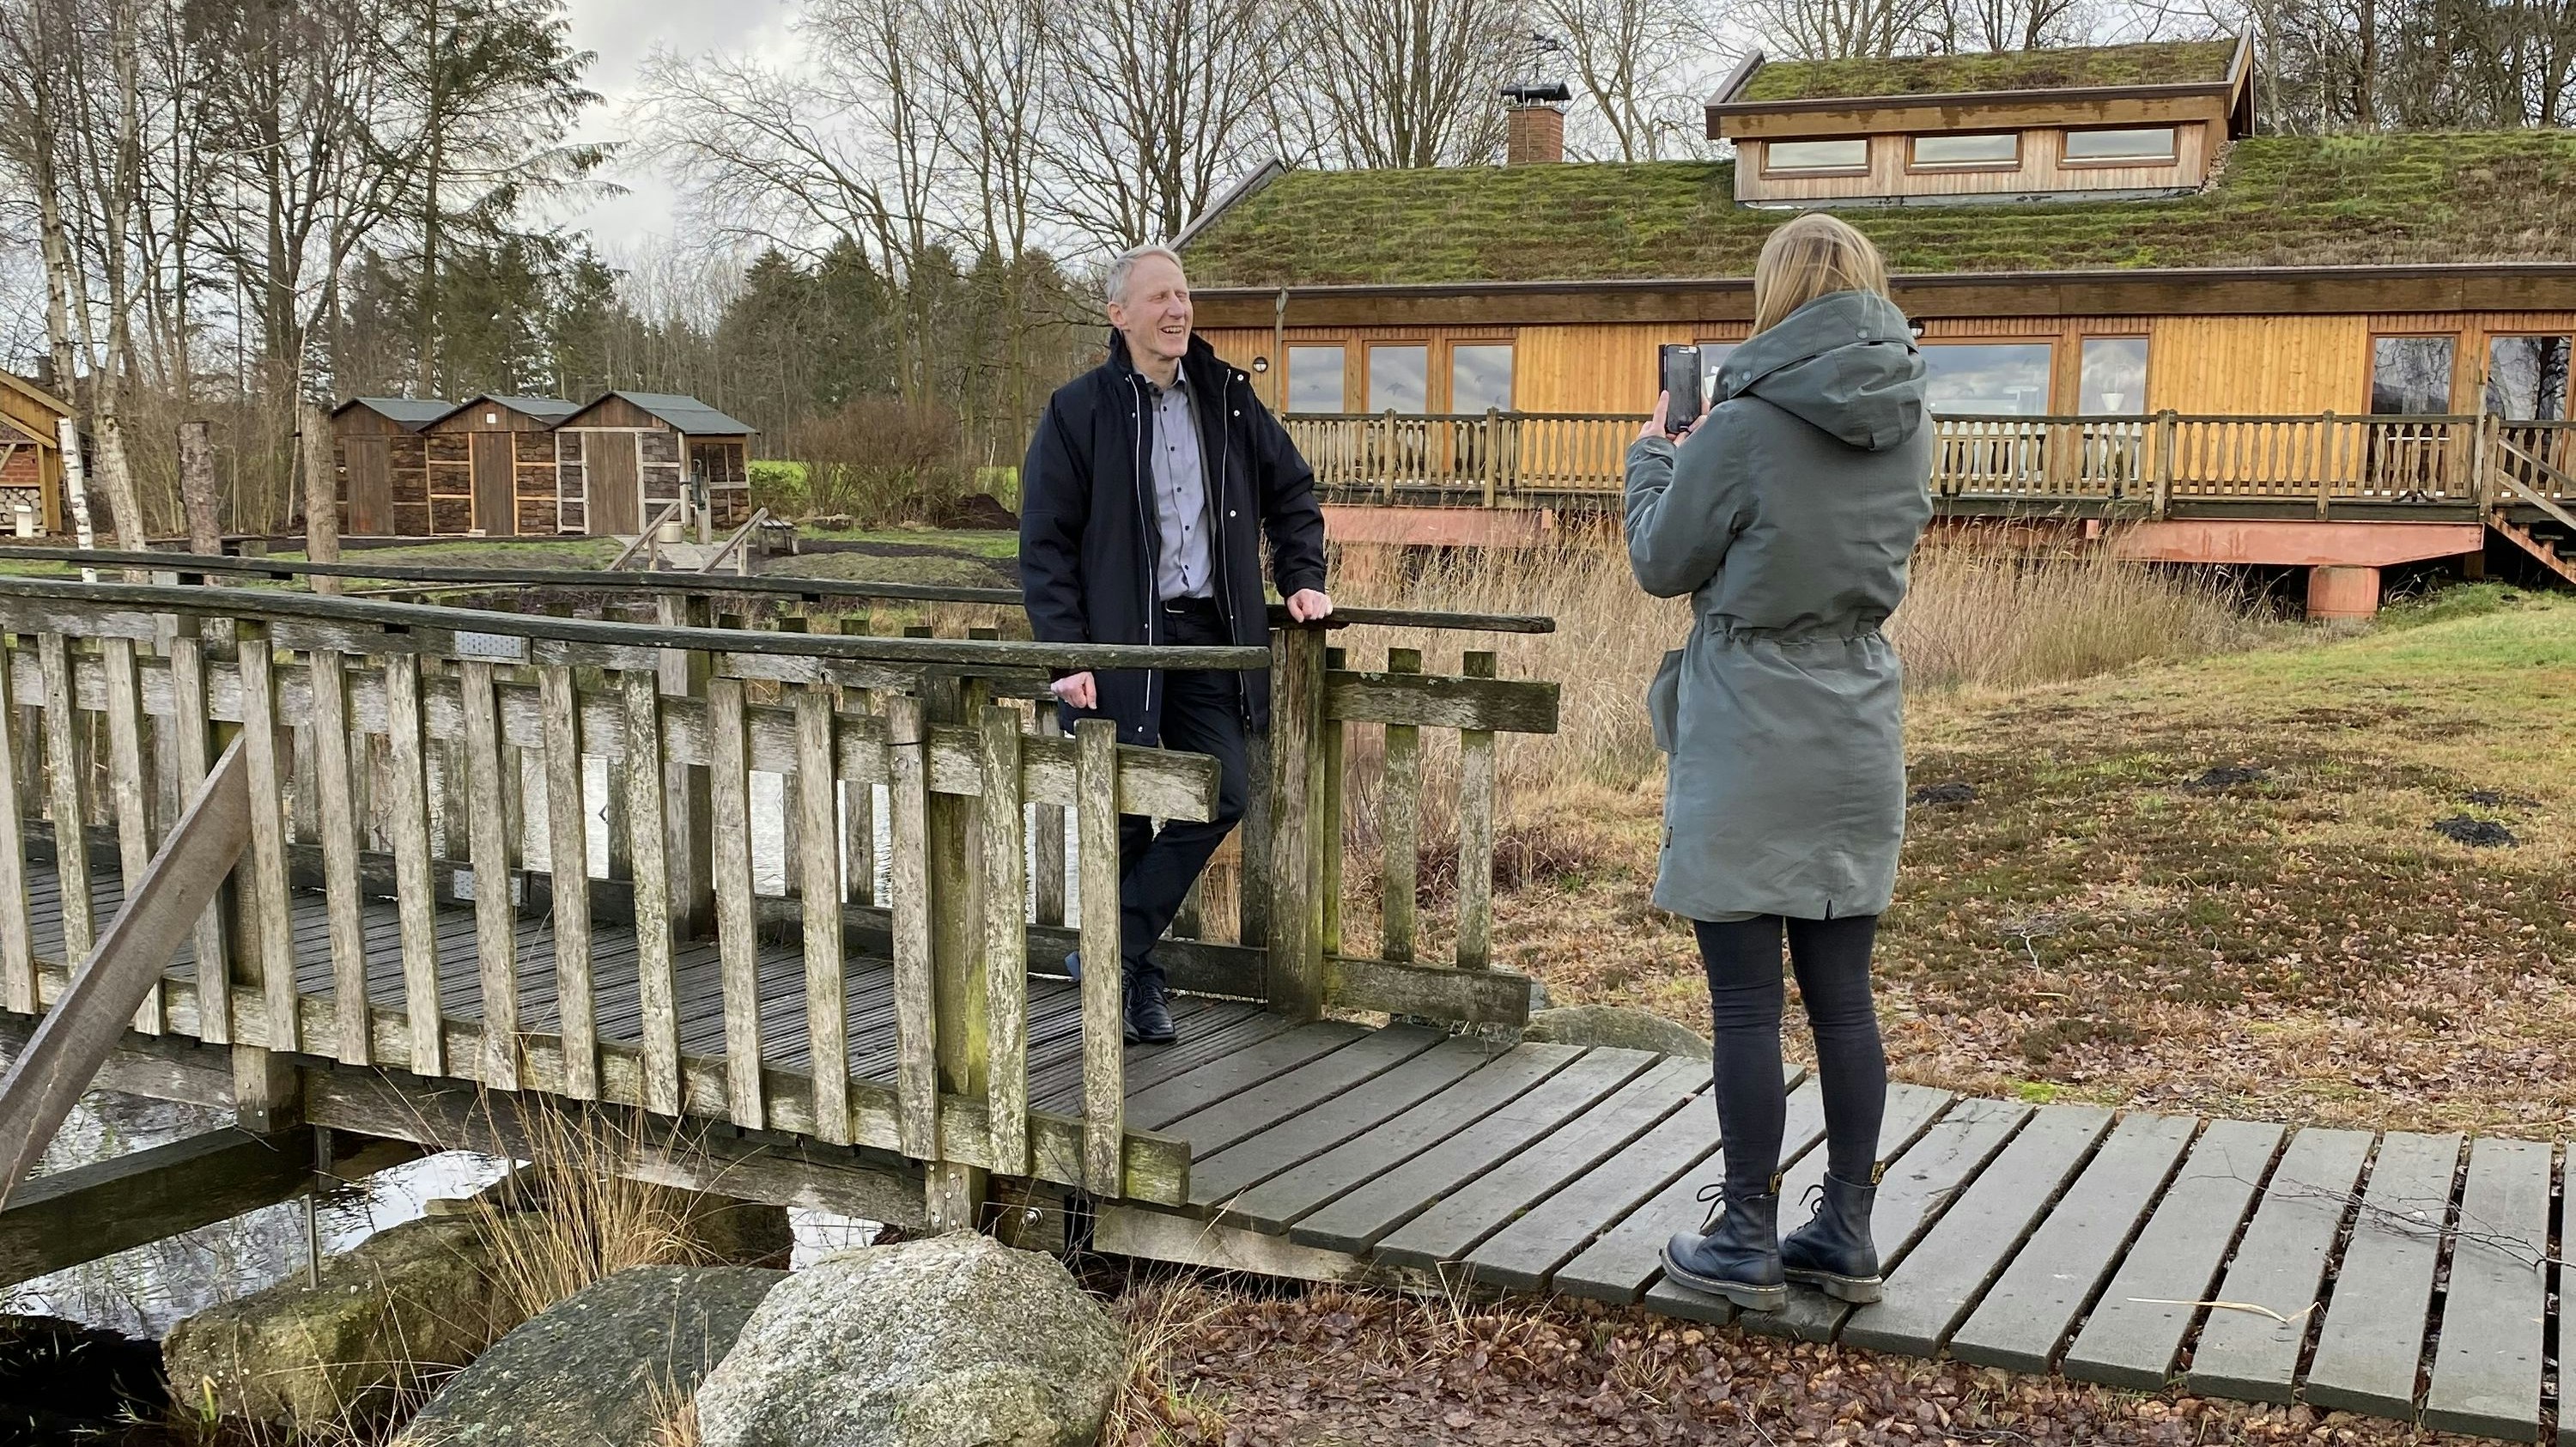 Kamera läuft: Goldenstedts Bürgermeister Alfred Kuhlmann spricht vorm Haus im Moor über Tourismus und Umweltschutz. Doro Stania filmt. Foto: Boning